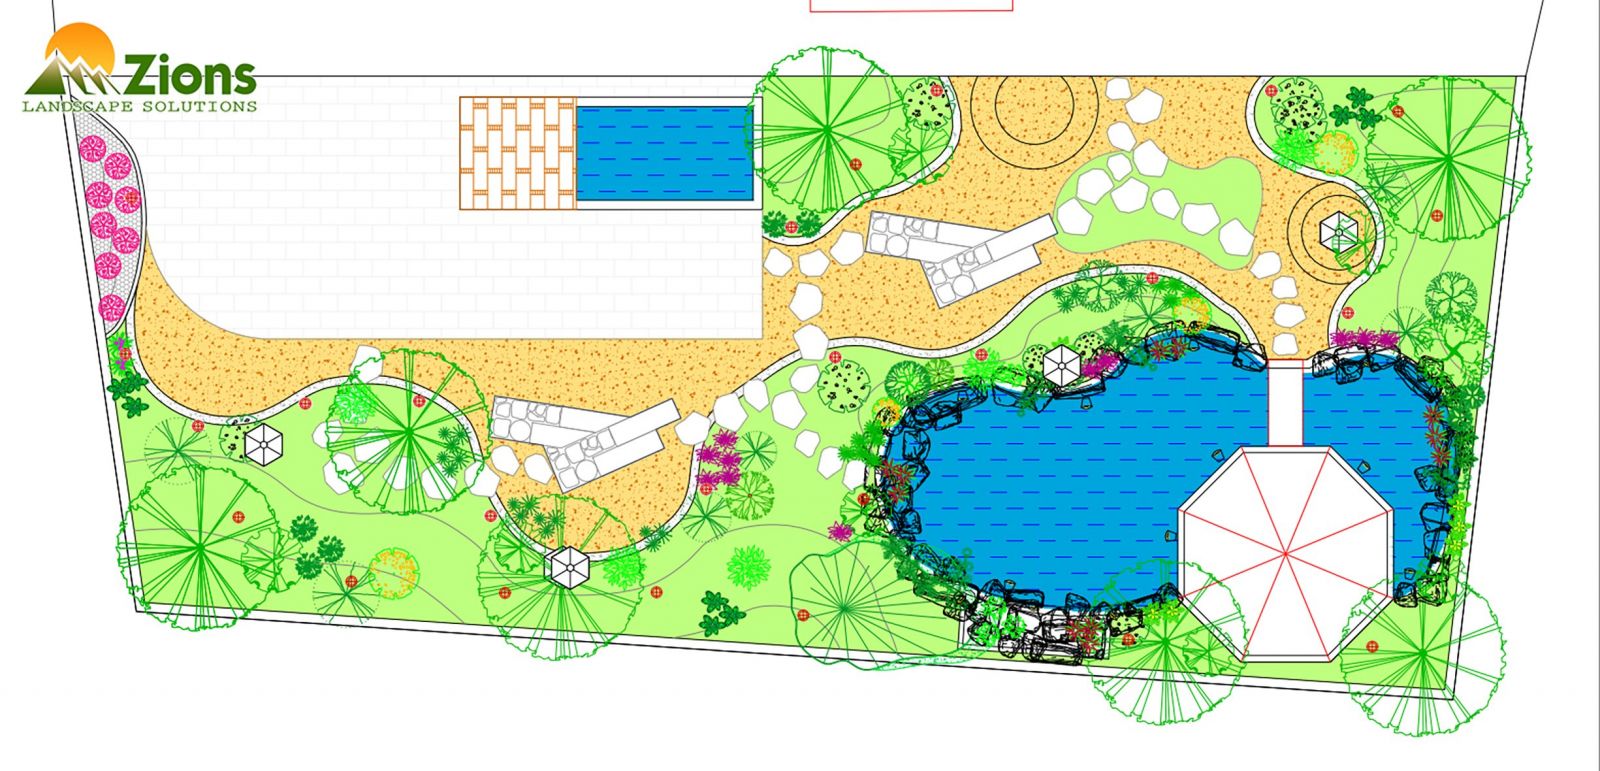 Mặt bằng sơ bộ thiết kế sân vườn tại An Giang - Zions